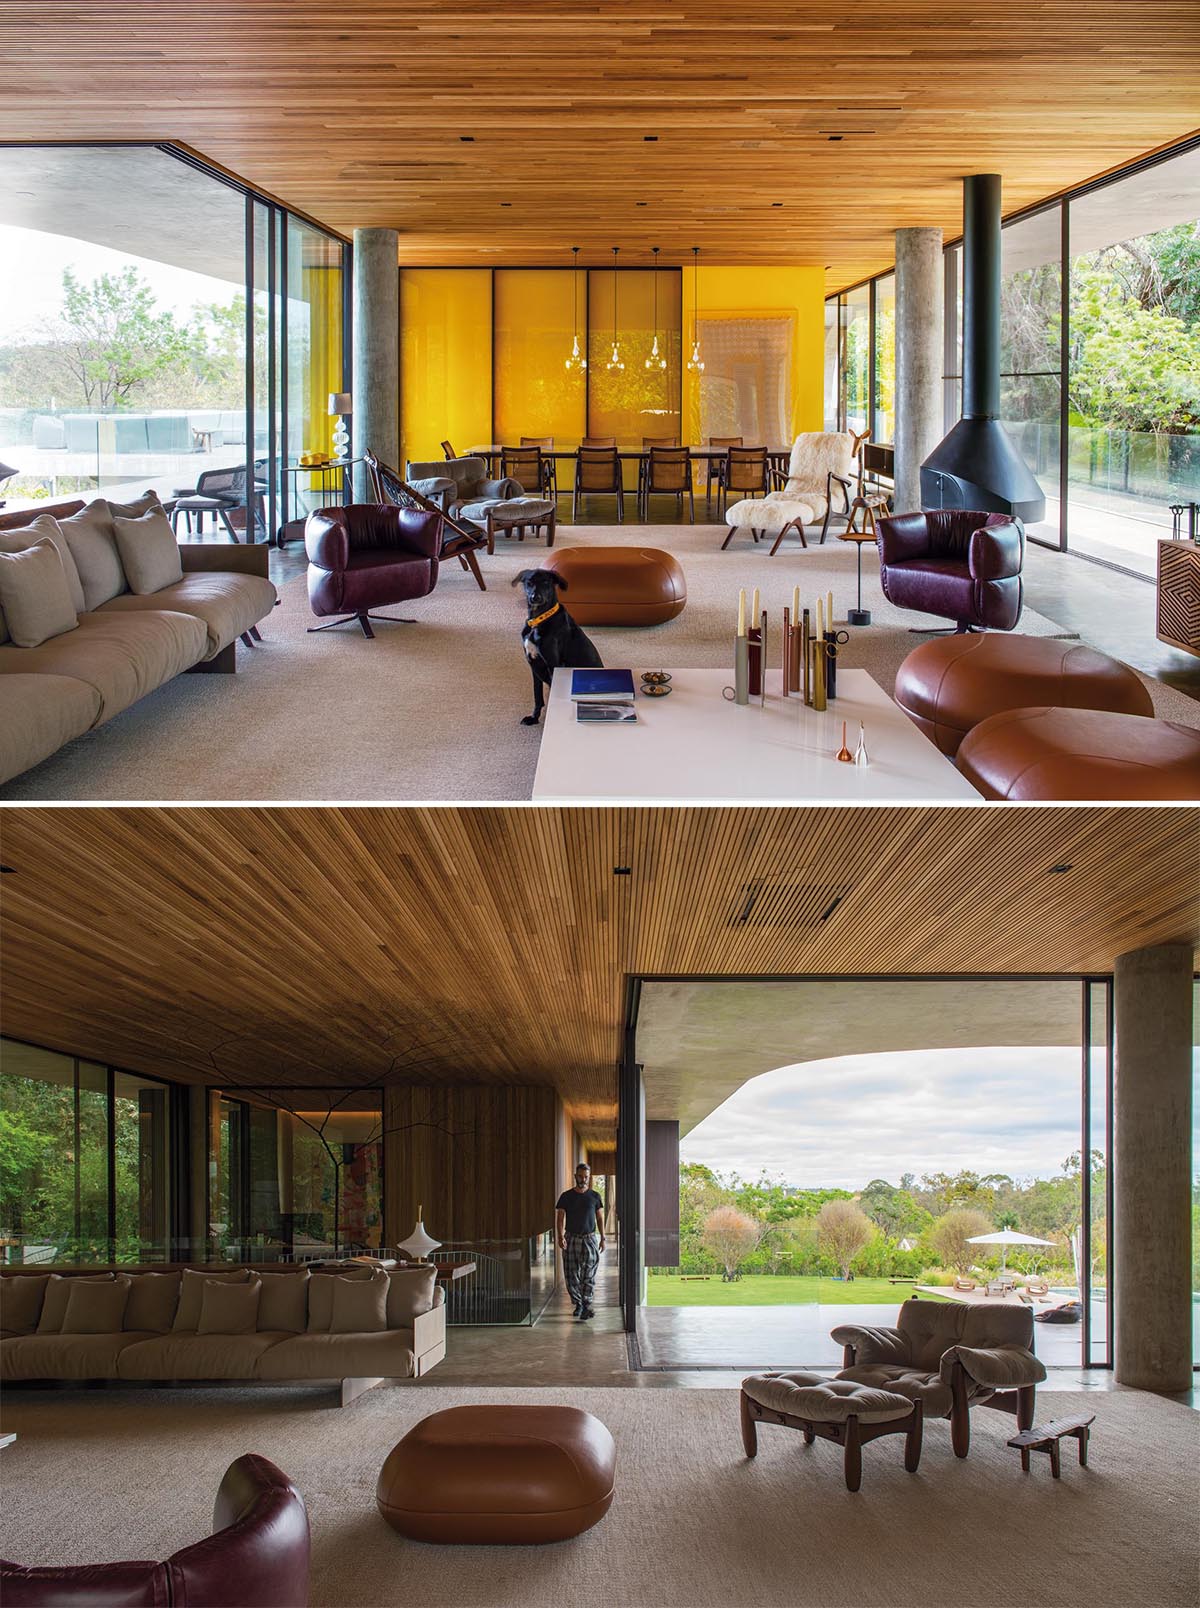 Trần gỗ và ánh sáng vàng tạo thêm cảm giác ấm áp cho nội thất hiện đại này, bao gồm sàn bê tông, lò sưởi treo và tường kính.